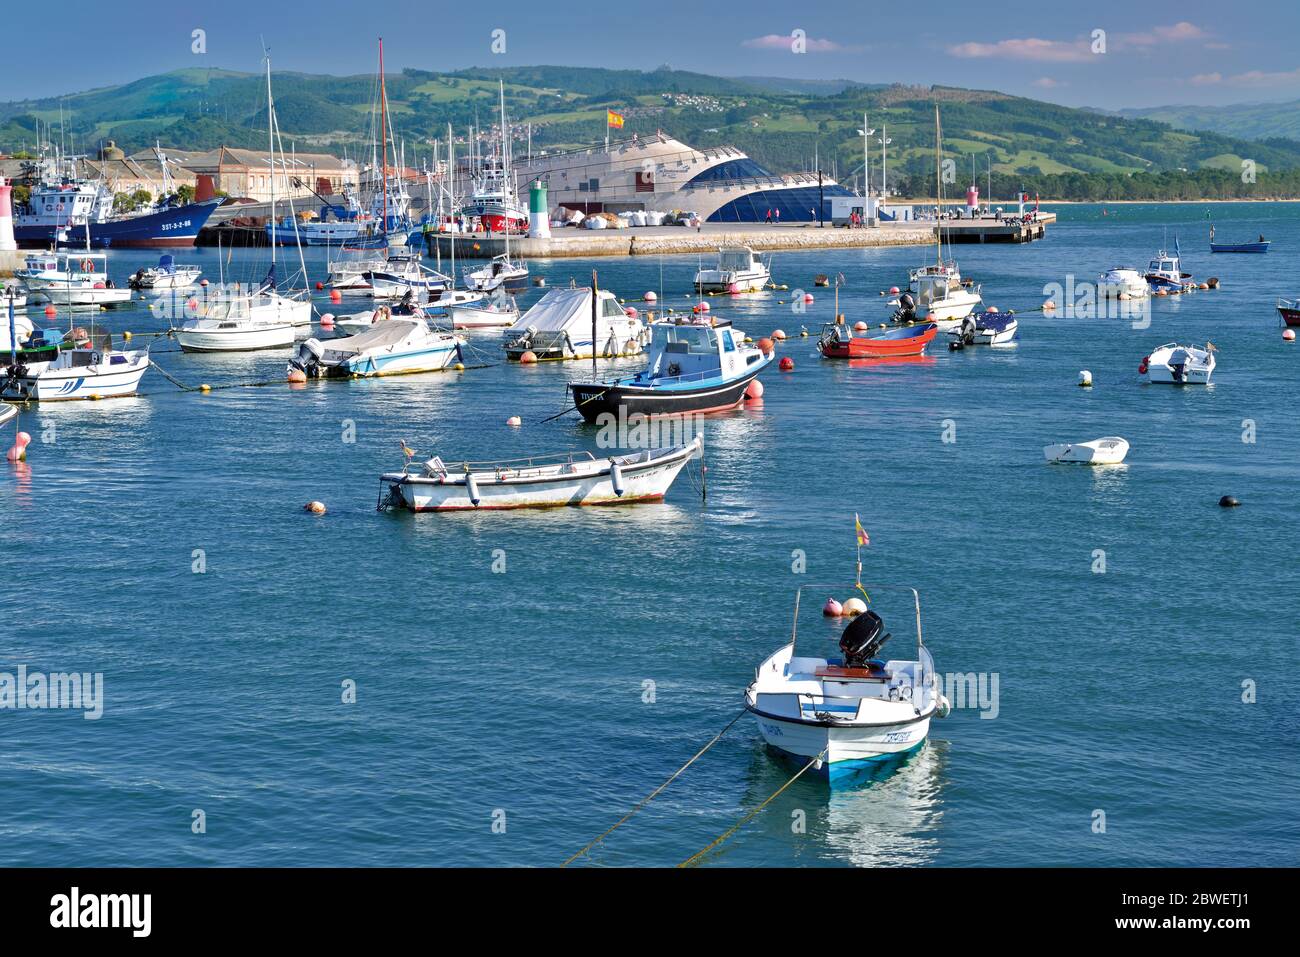 Barcos de pesca anclados en el puerto y la tranquila bahía de Santona con el Mirador de las Marismas en el fondo Foto de stock